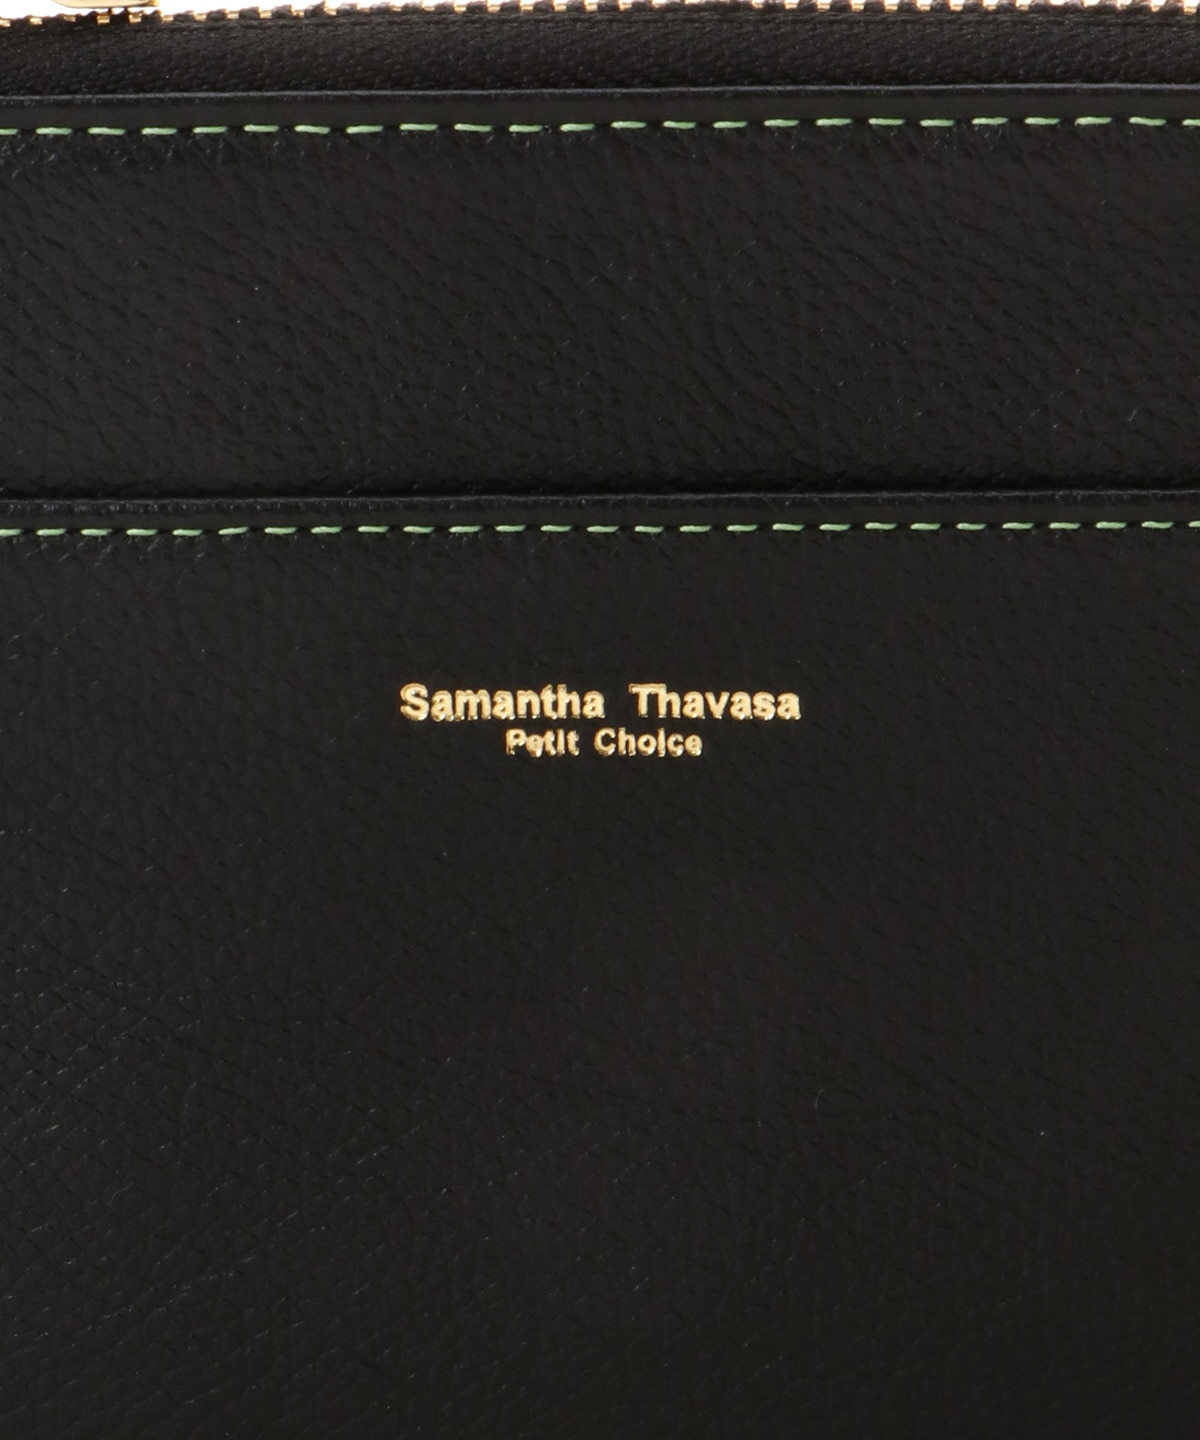 シンプルポイントカラー 中財布|Samantha Thavasa Petit Choice